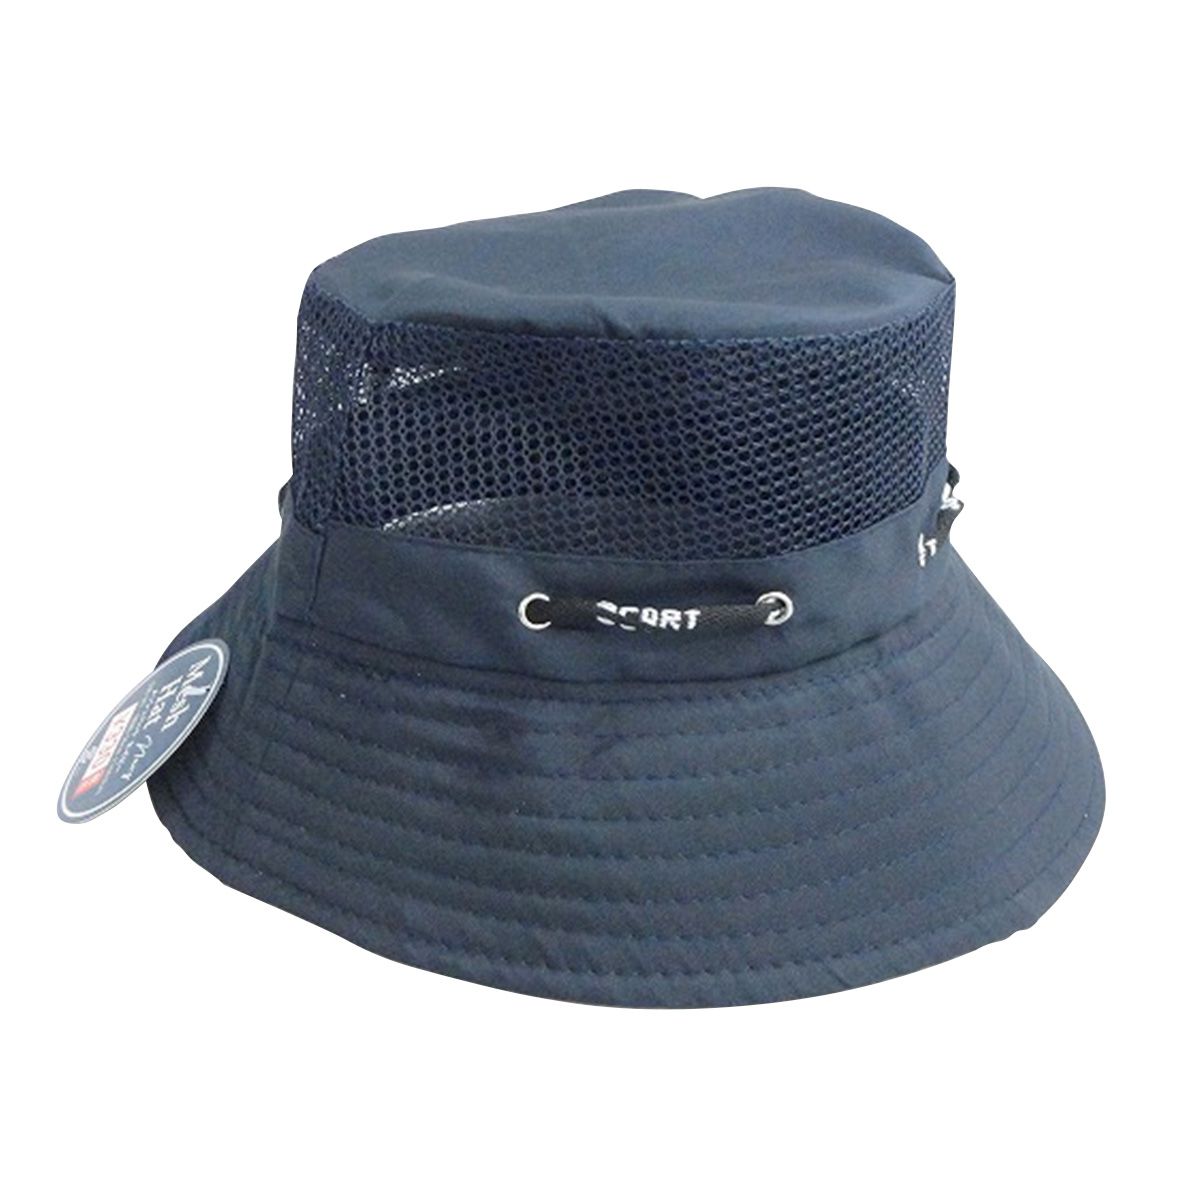 【OUTLET】帽子 つば広 夏用 メッシュハット ネイビー 365575